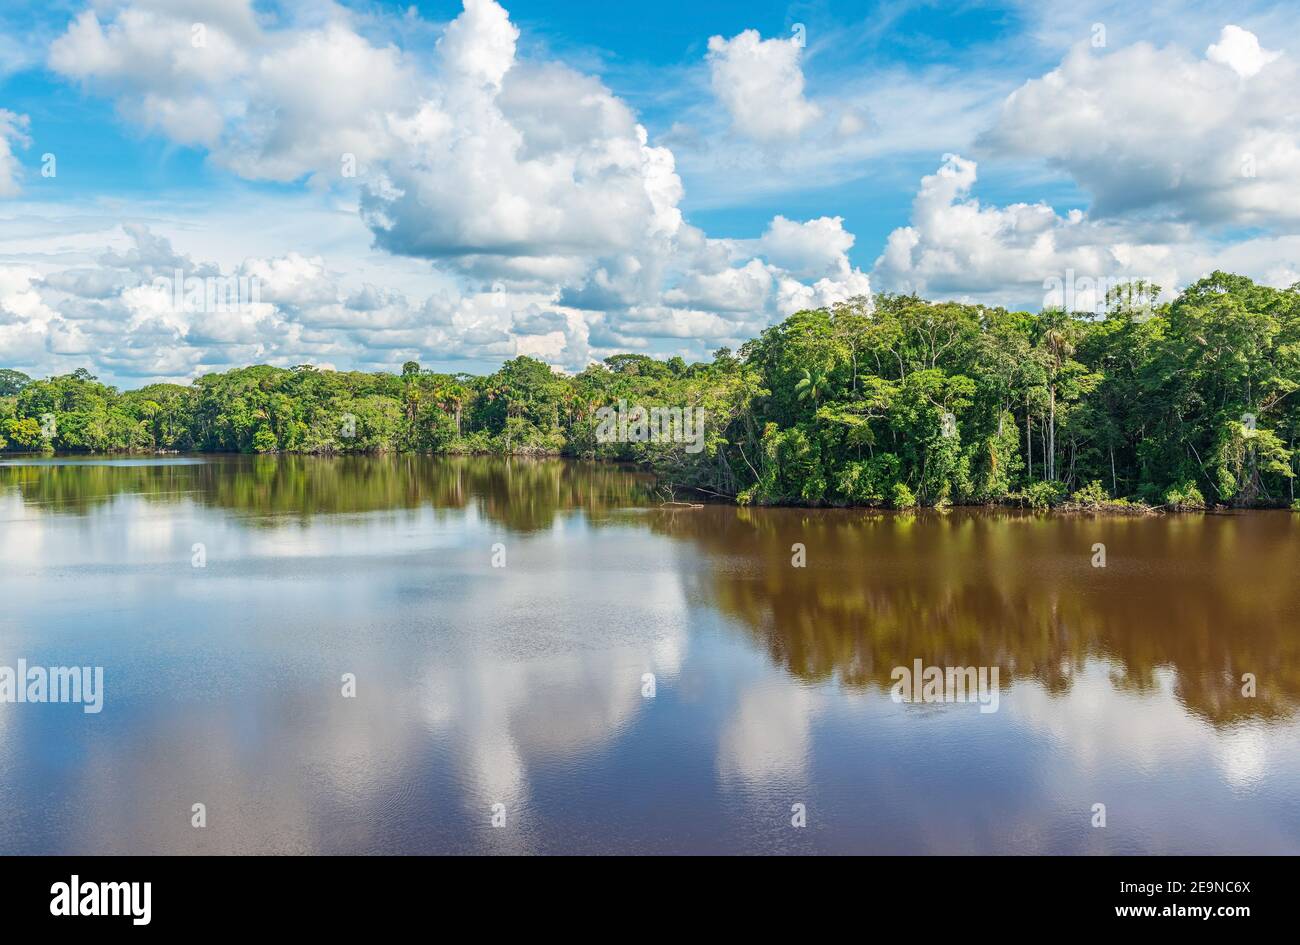 Amazonas Regenwald See Reflexion, das Amazonas-Flussbecken umfassen Bolivien, Brasilien, Kolumbien, Ecuador, Peru, (Französisch) Guyana, Suriname, Venezuela. Stockfoto